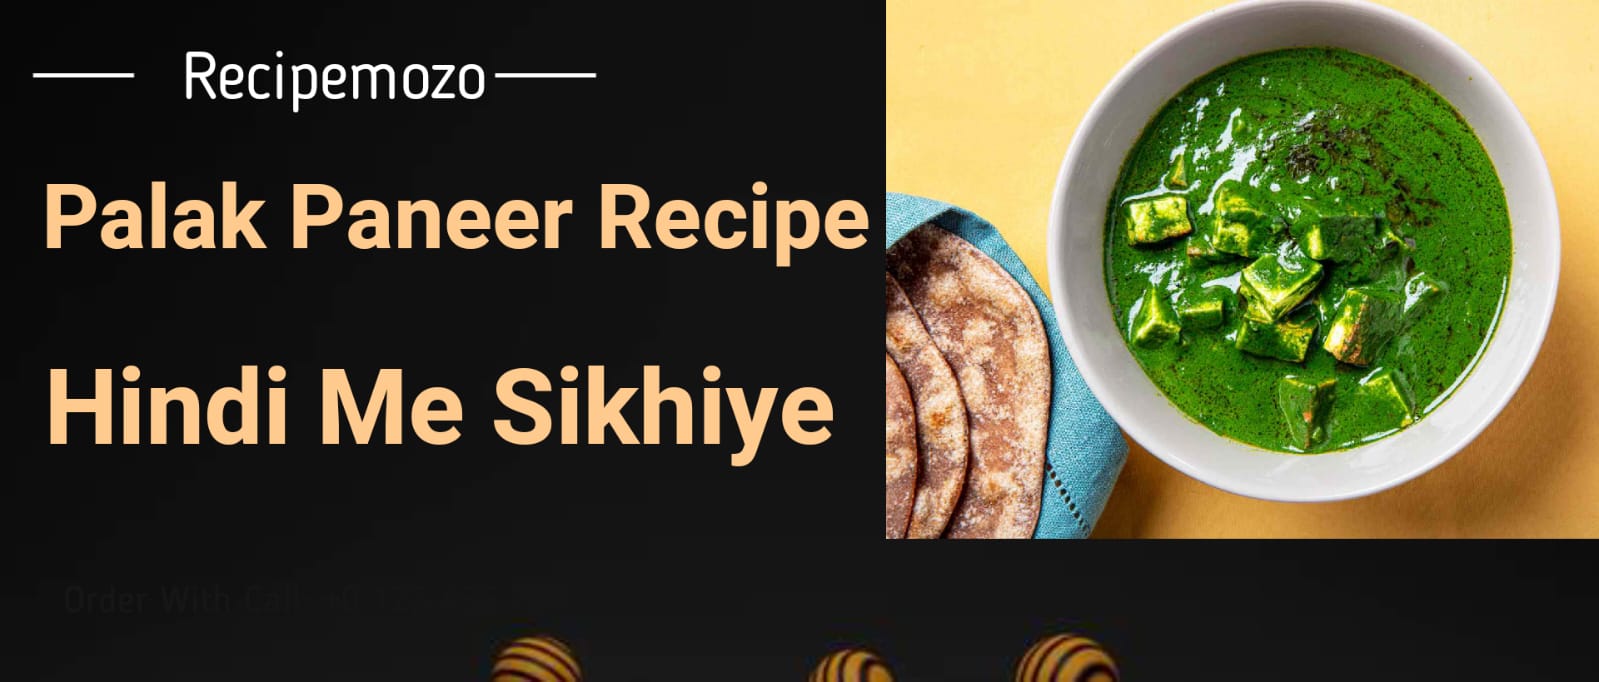 palak paneer recipe in hindi एक उत्तम शाकाहारी व्यंजन